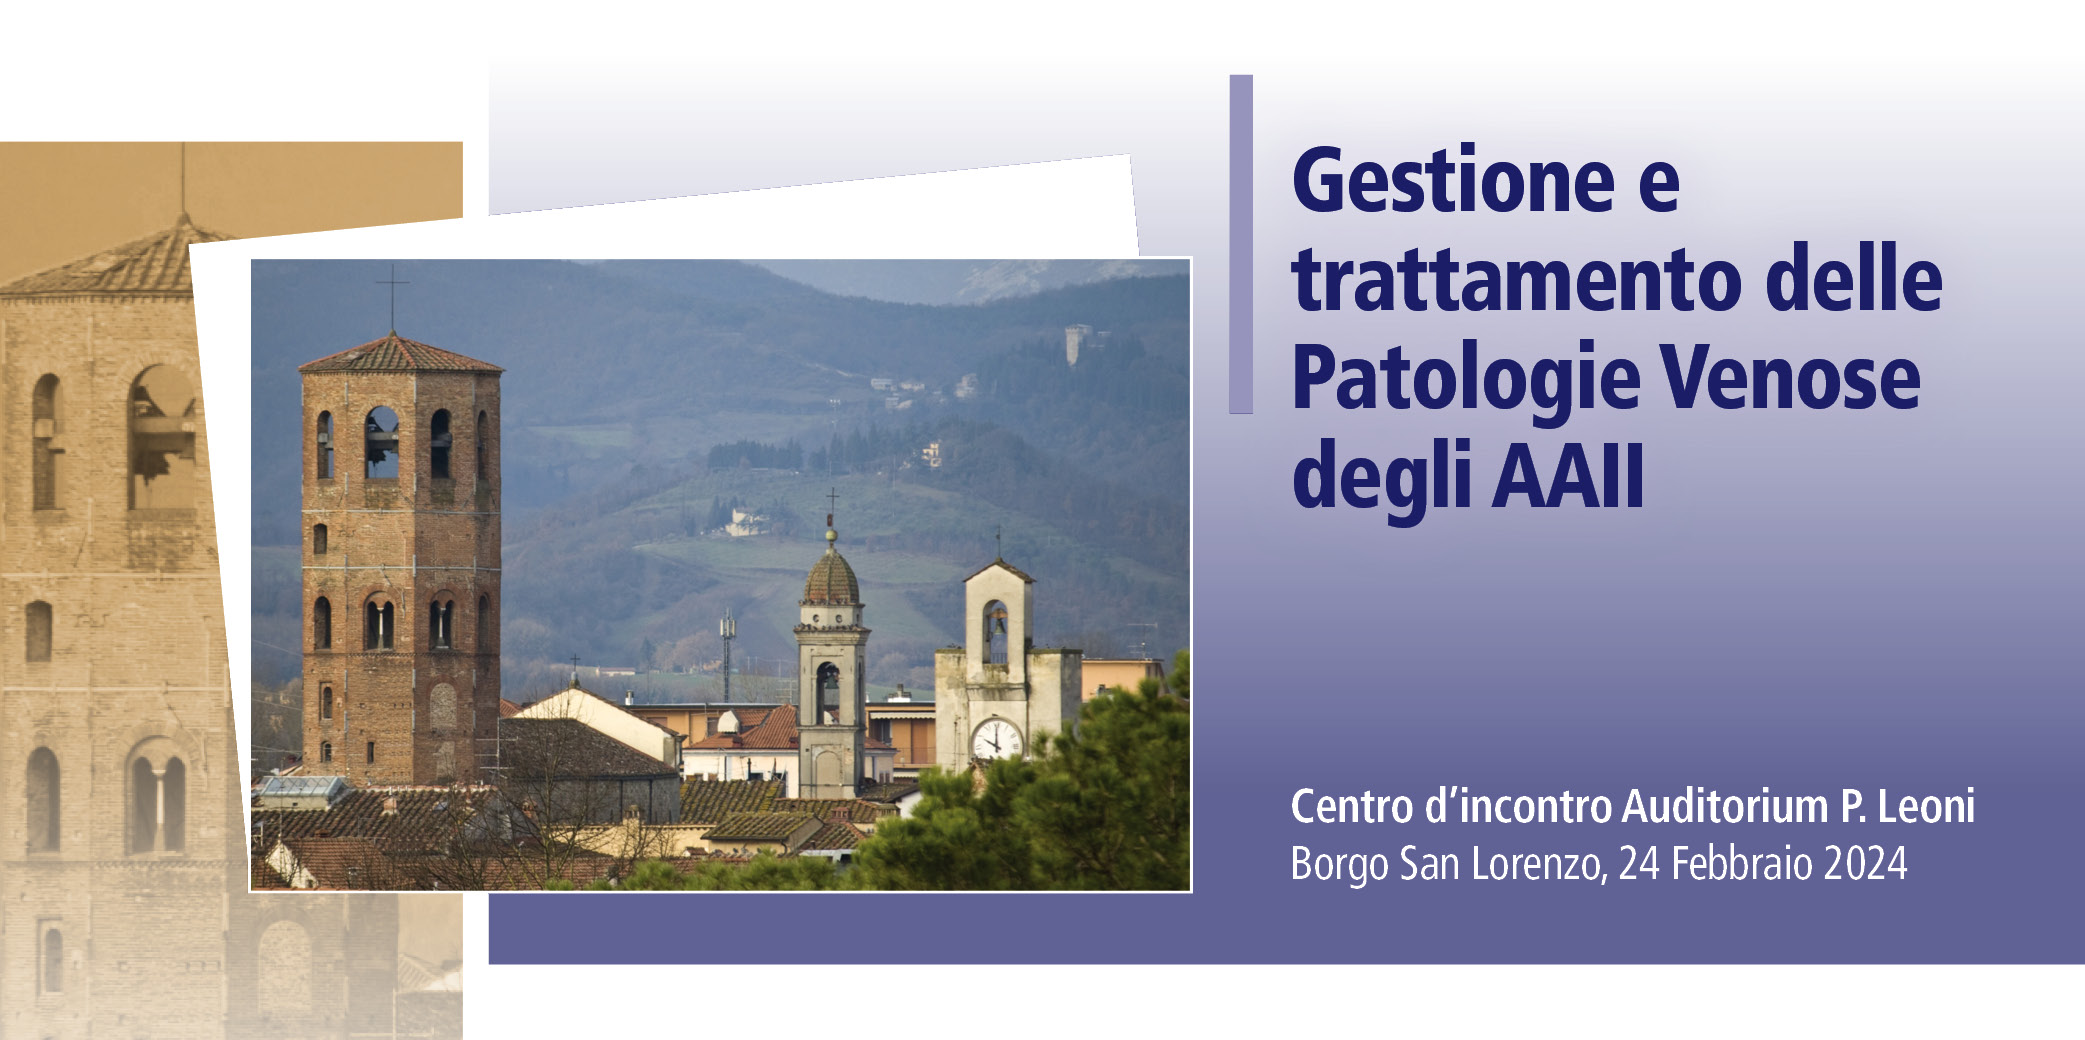 Gestione e Trattamento delle Patologie Venose degli AAII – Borgo San Lorenzo (FI), 24 Febbraio 2024